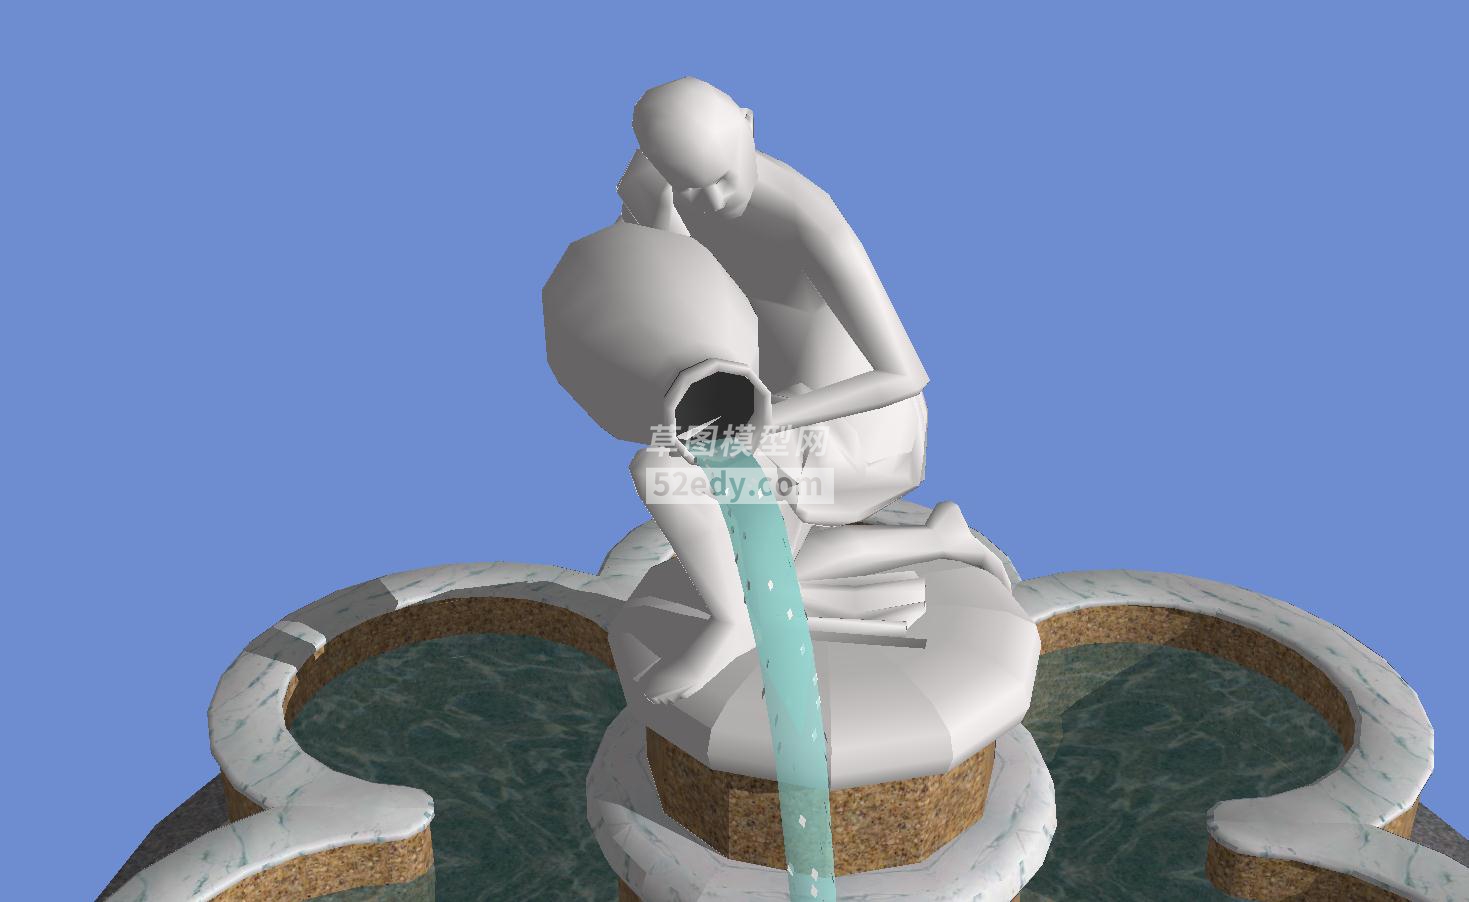 欧式风格男人拿水瓶喷泉流水模型QQ浏览器截图20190125023907(5)